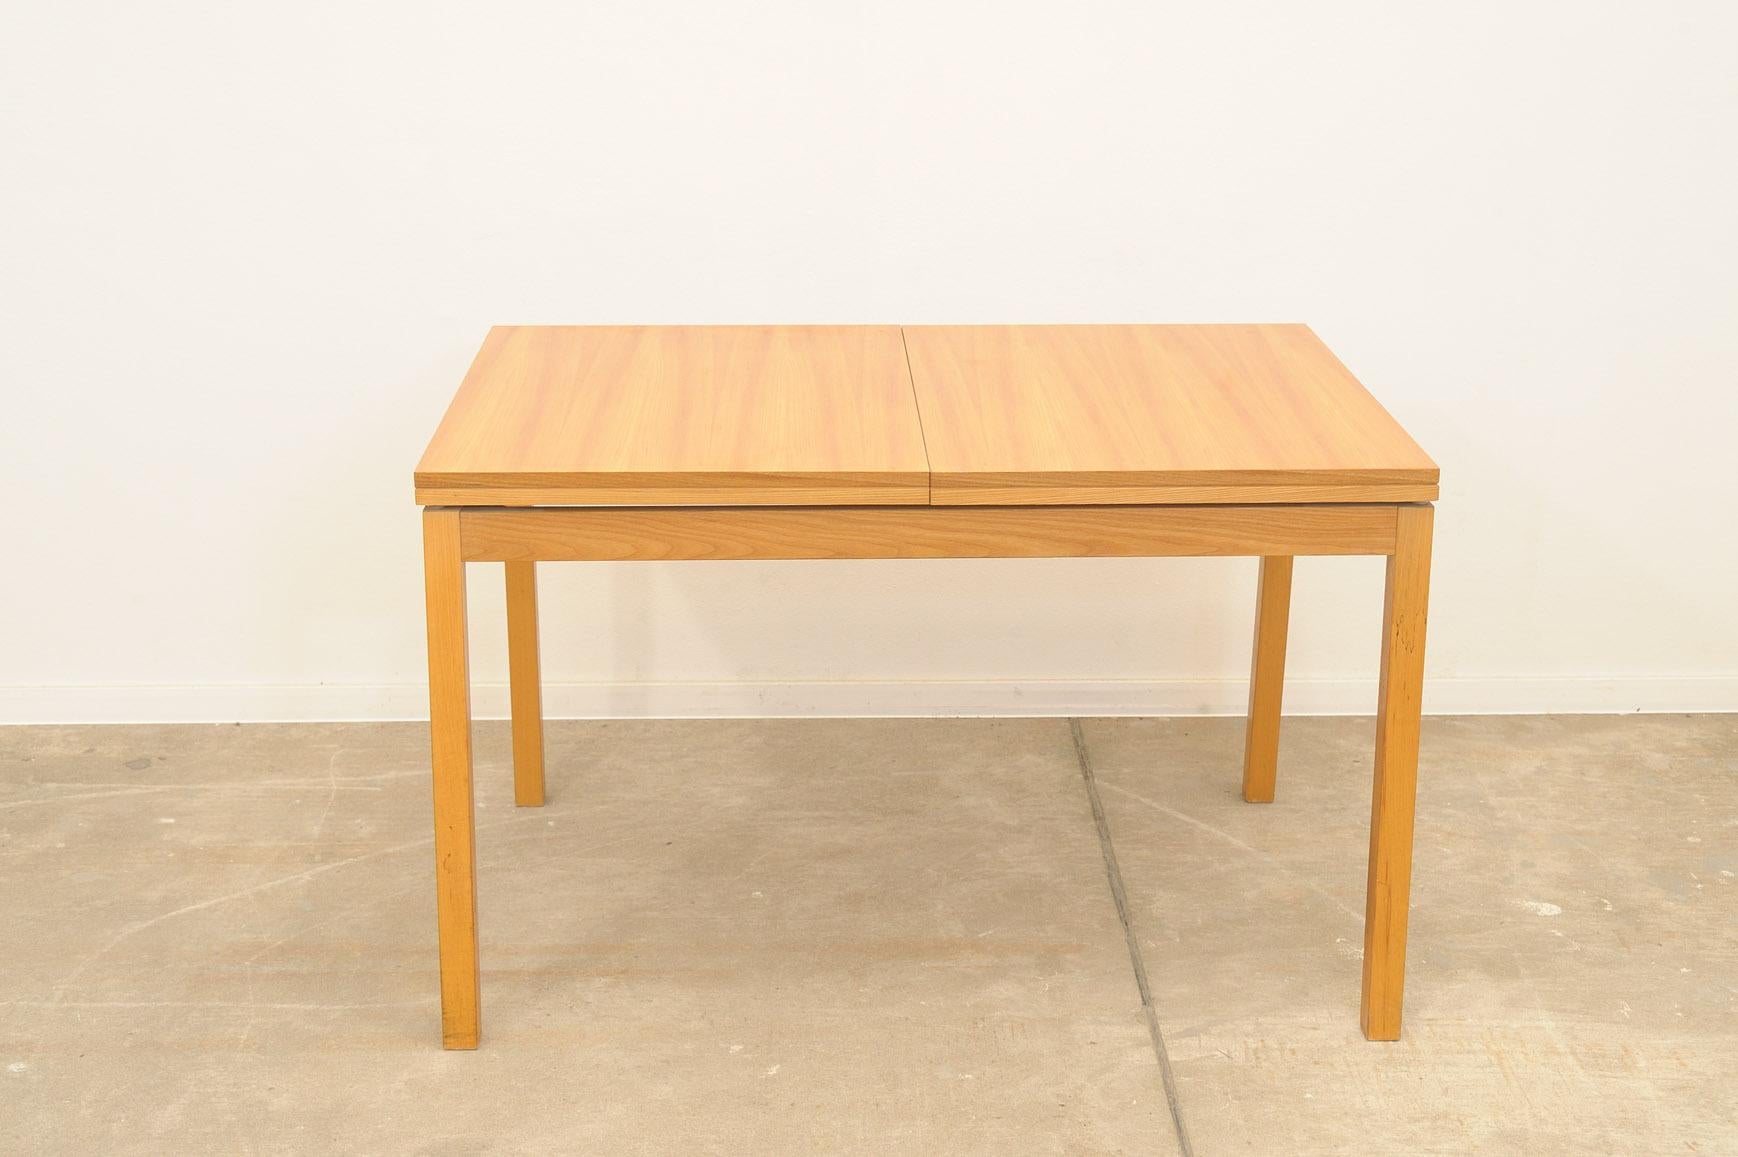 Cette table de salle à manger réglable a été fabriquée par la société Jitona dans l'ancienne Tchécoslovaquie dans les années 1970.  Il est fabriqué en bois d'orme.  La longueur est réglable de 120 cm à 170 cm. La table est en très bon état,